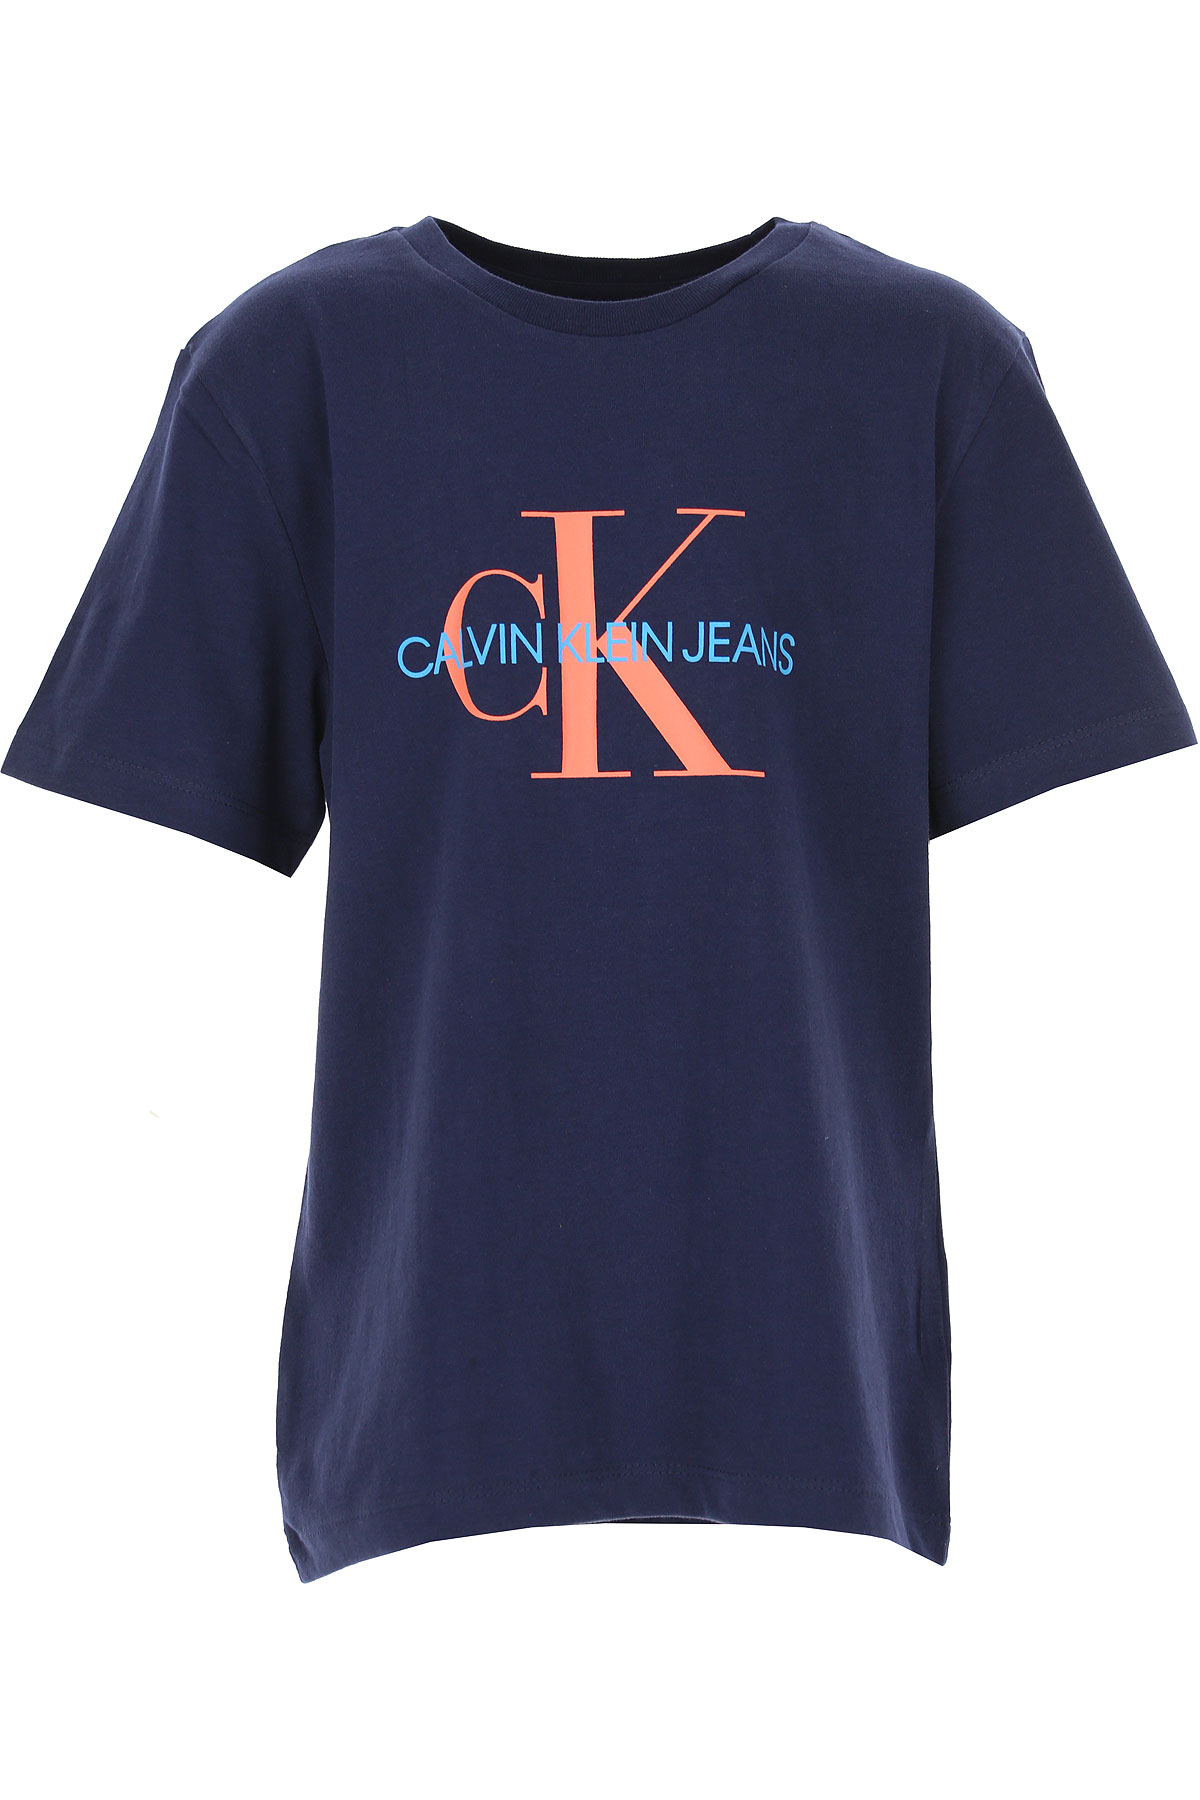 Calvin Klein Kinder T-Shirt für Jungen Günstig im Sale, Blau, Baumwolle, 2017, 10Y 12Y 14Y 16Y 8Y